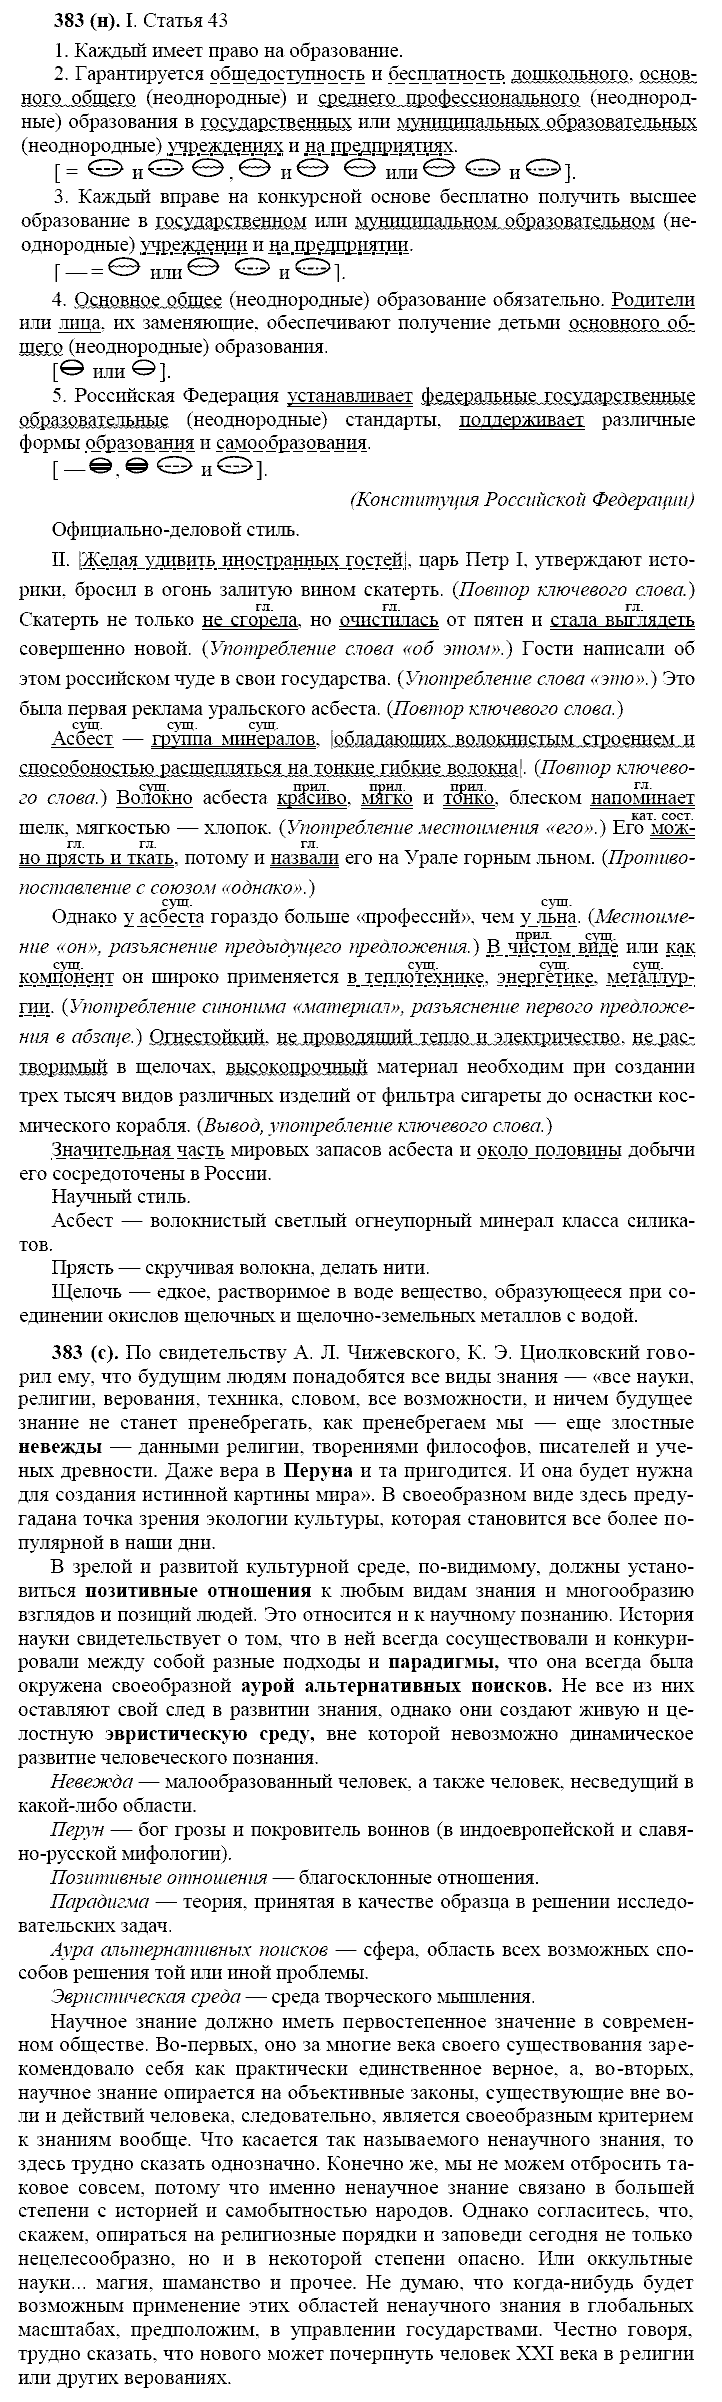 Русский язык, 11 класс, Власенков, Рыбченков, 2009-2014, задание: 383 (н)